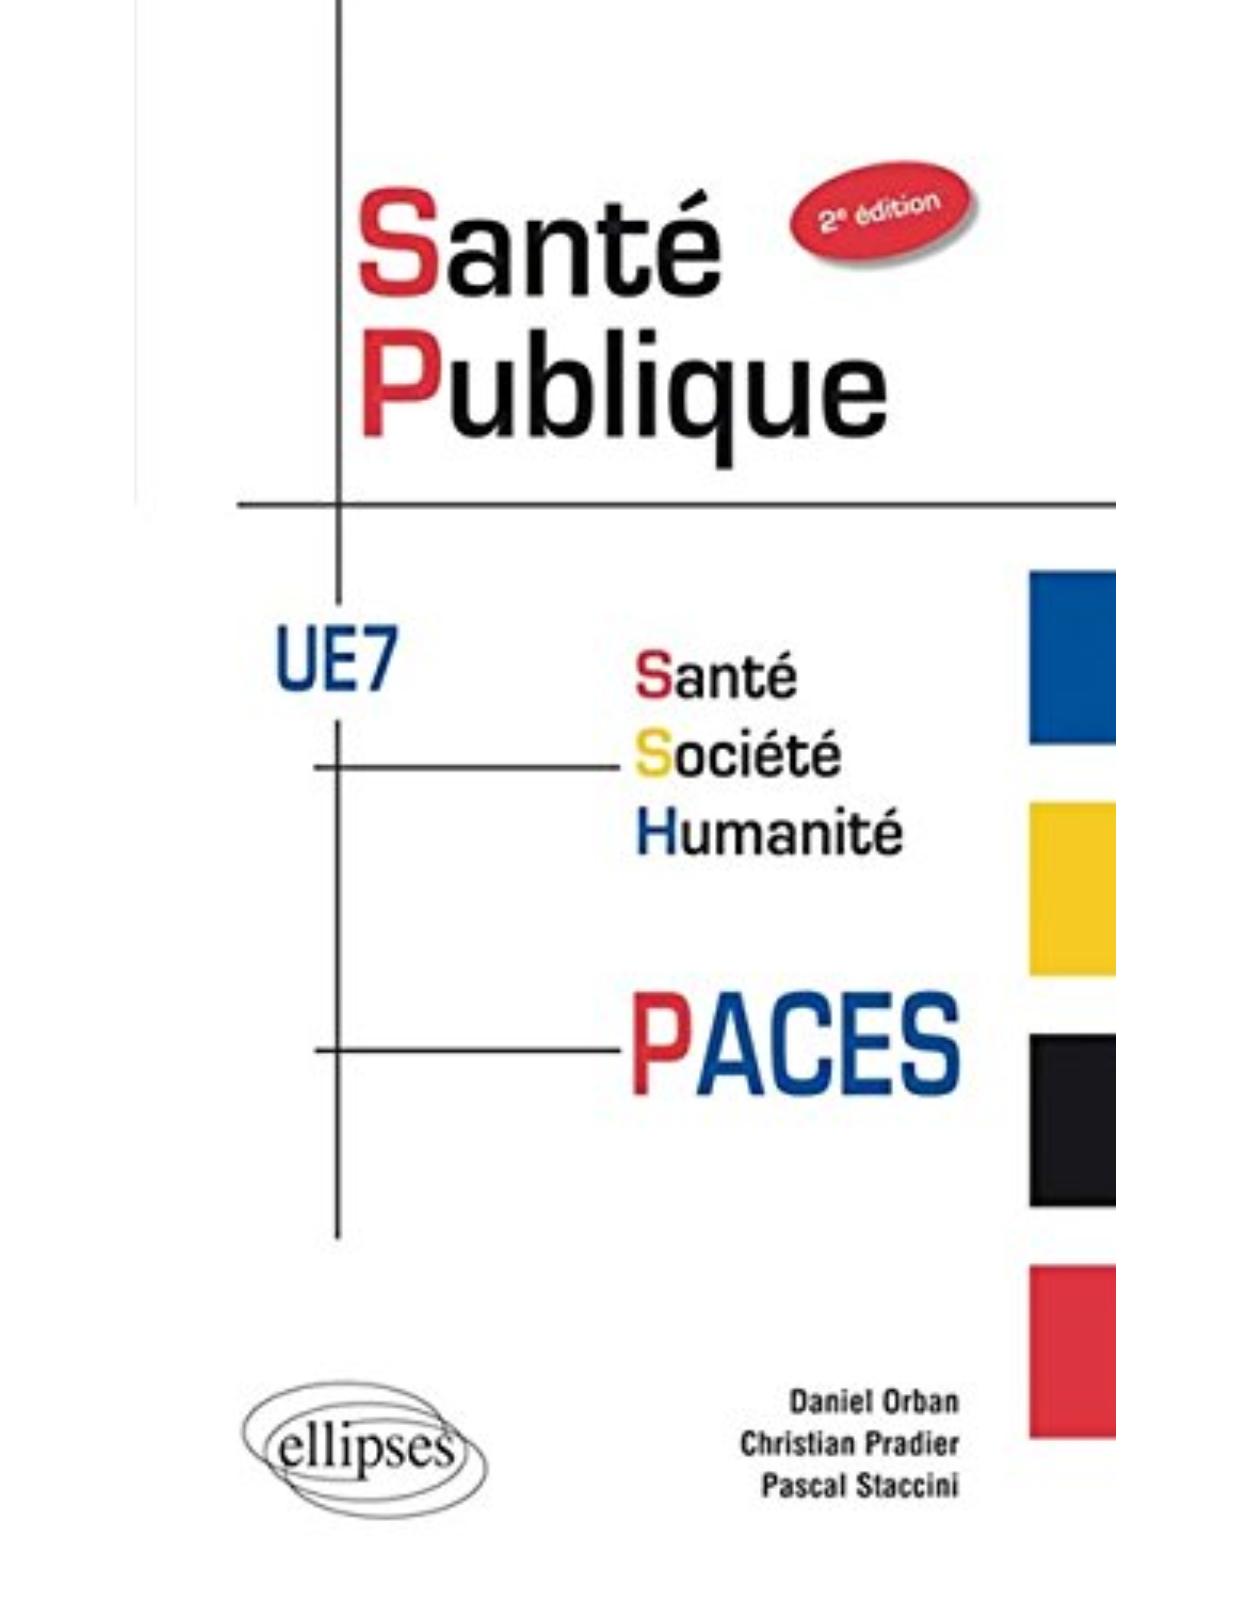 Santé Publique PACES UE7 Santé Société Humanité